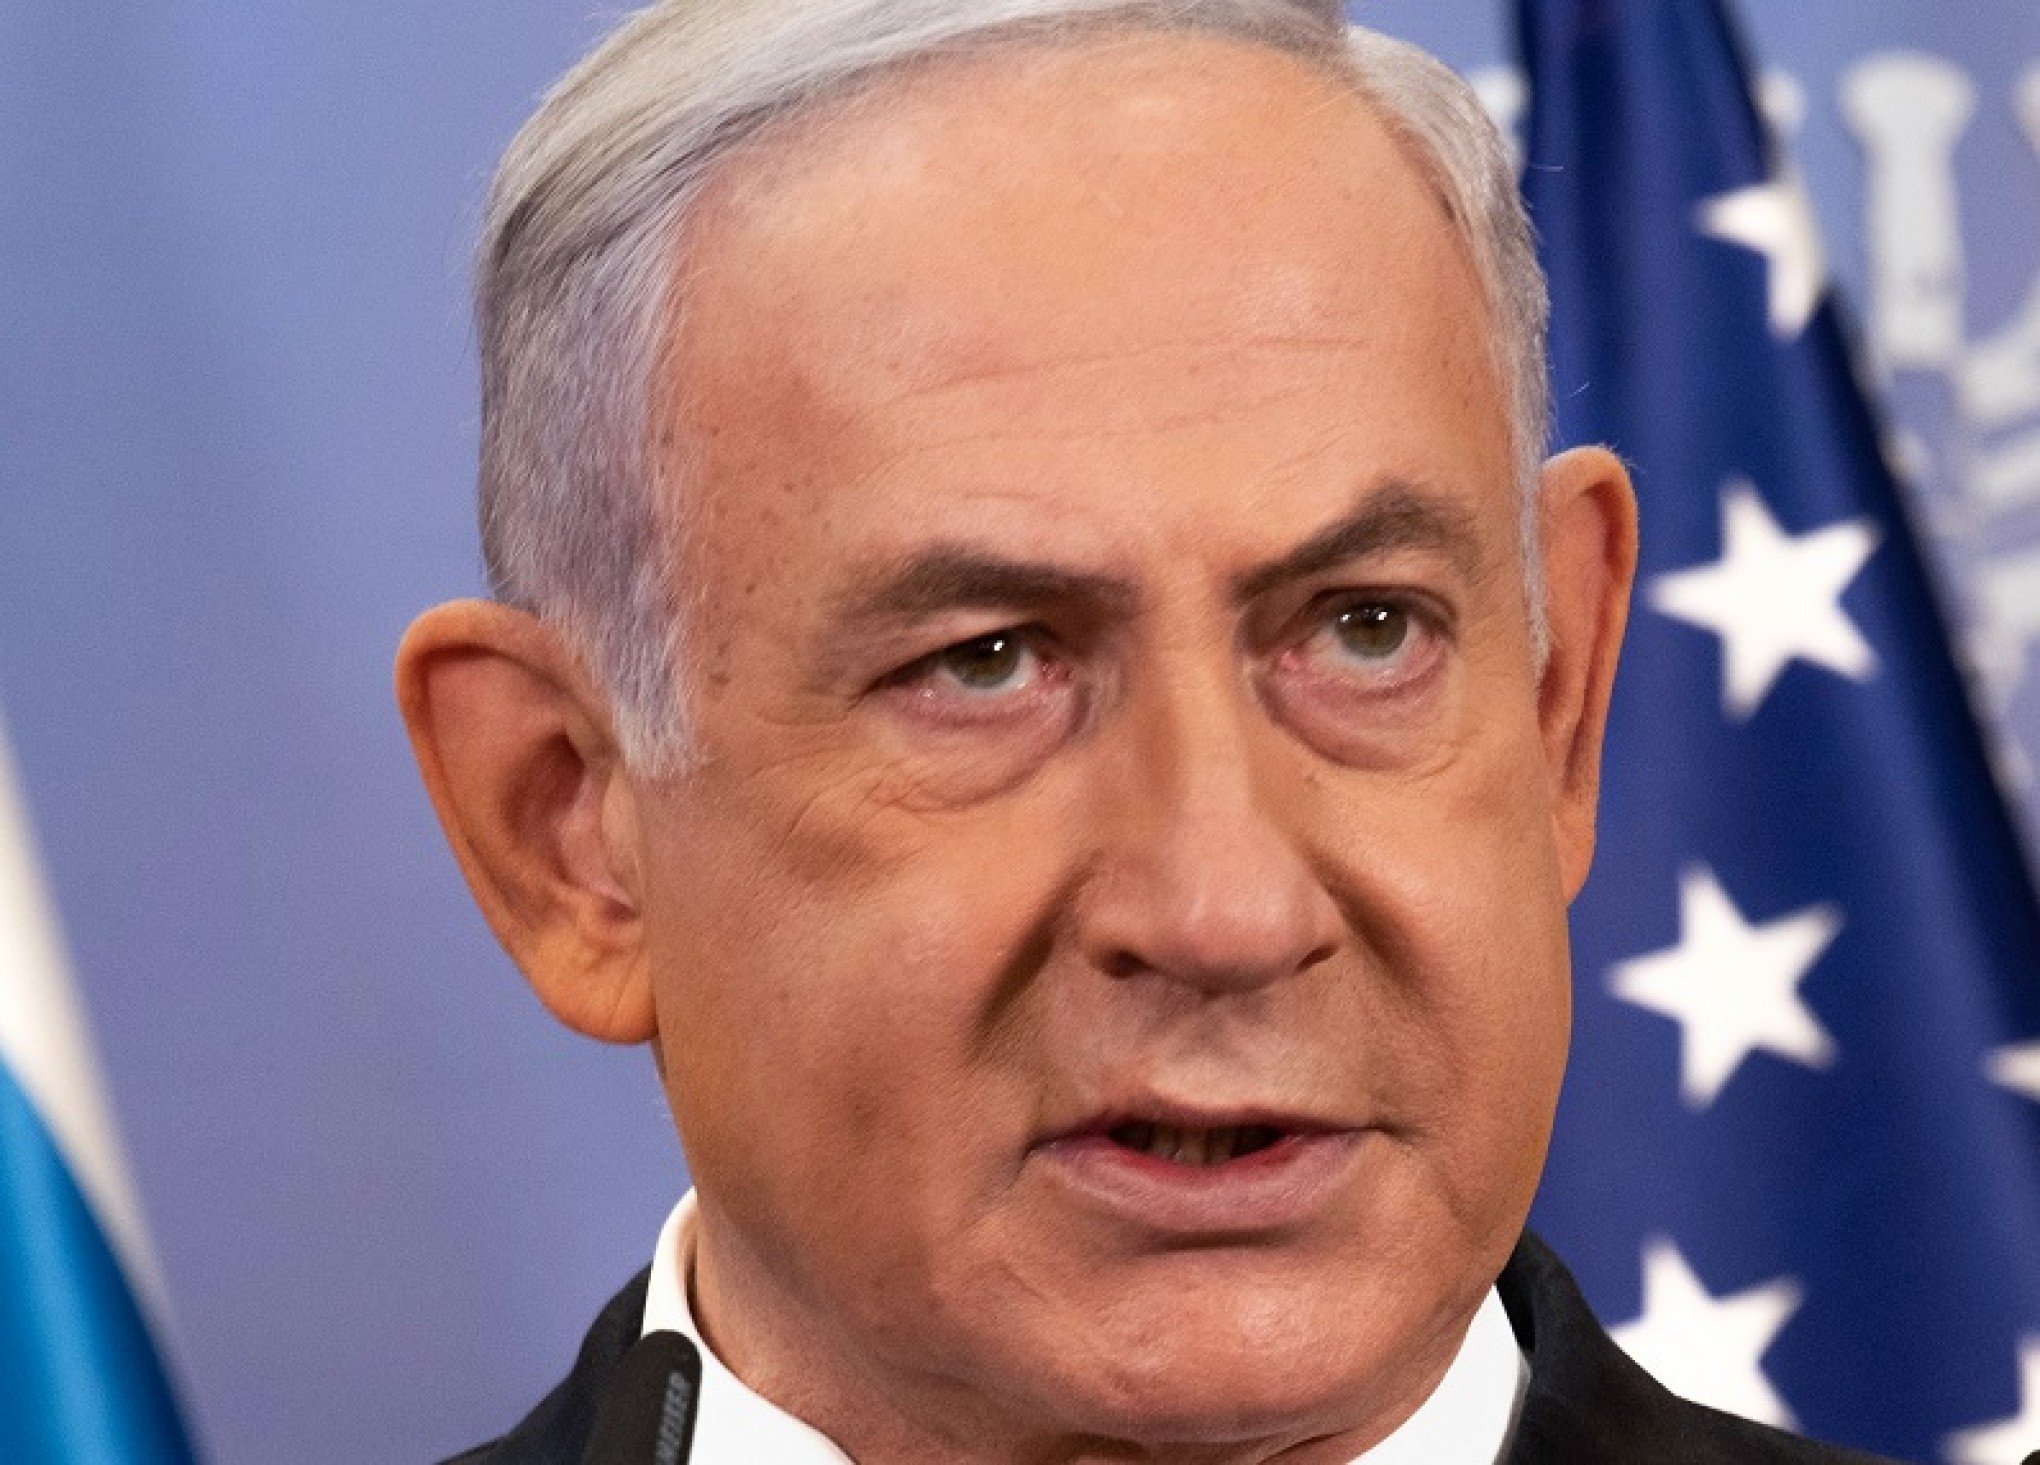 "Nada nos impedirá", diz Netanyahu; primeiro-ministro deseja vitória decisiva em Gaza